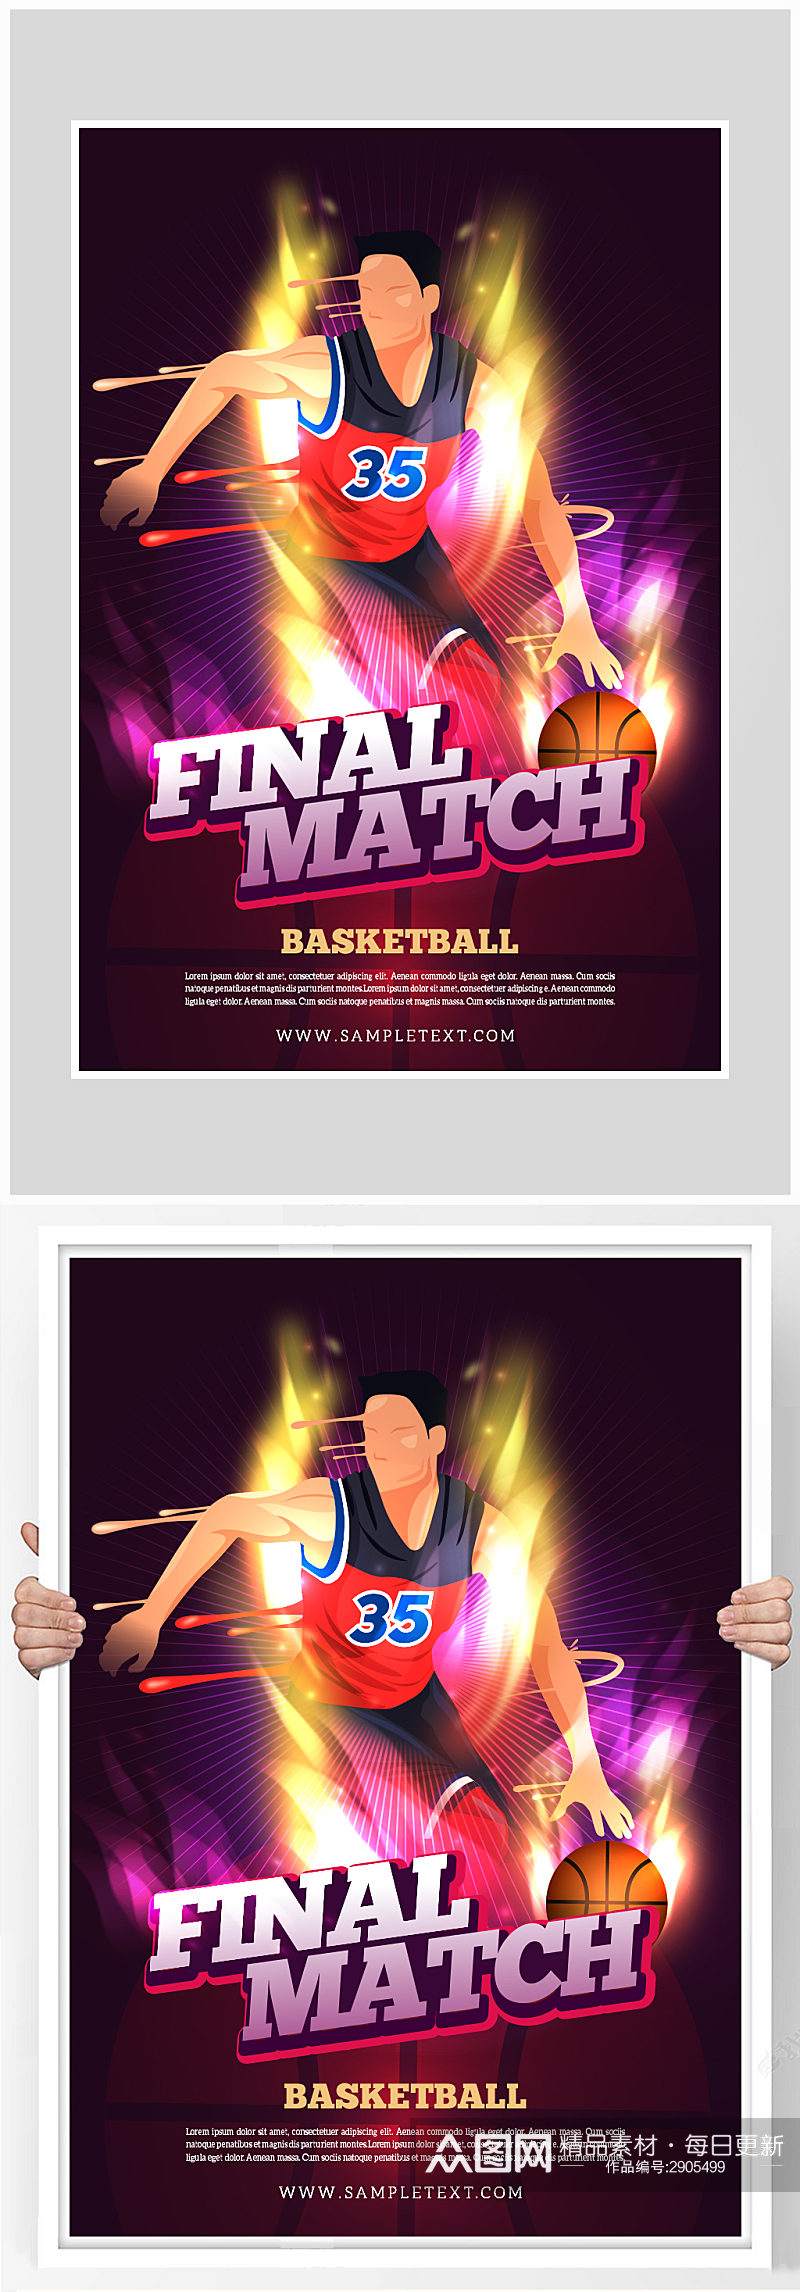 创意炫酷篮球比赛海报设计素材